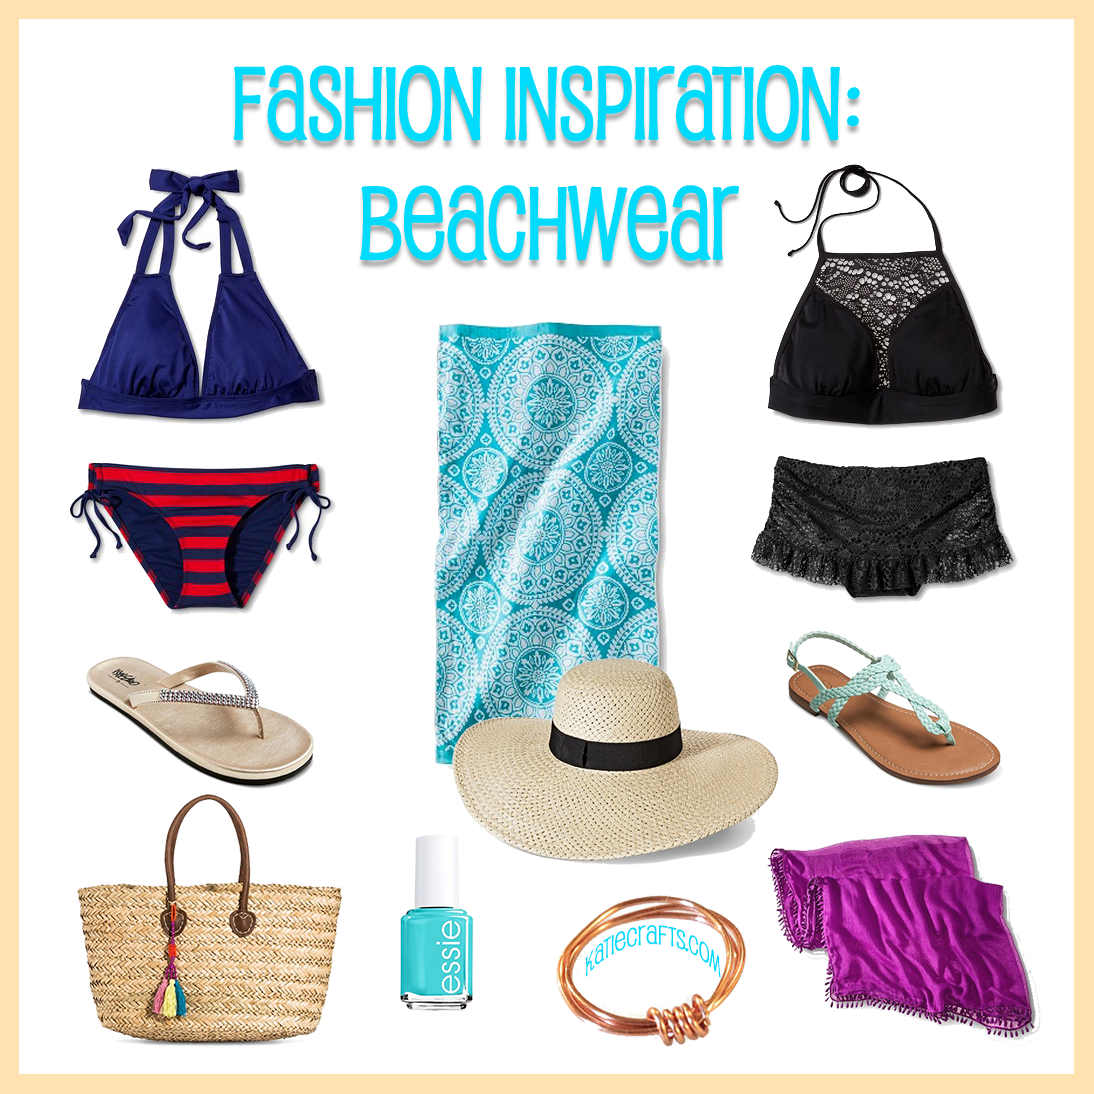 Fashion Inspiration: Beachwear on Katie Crafts; https://www.katiecrafts.com